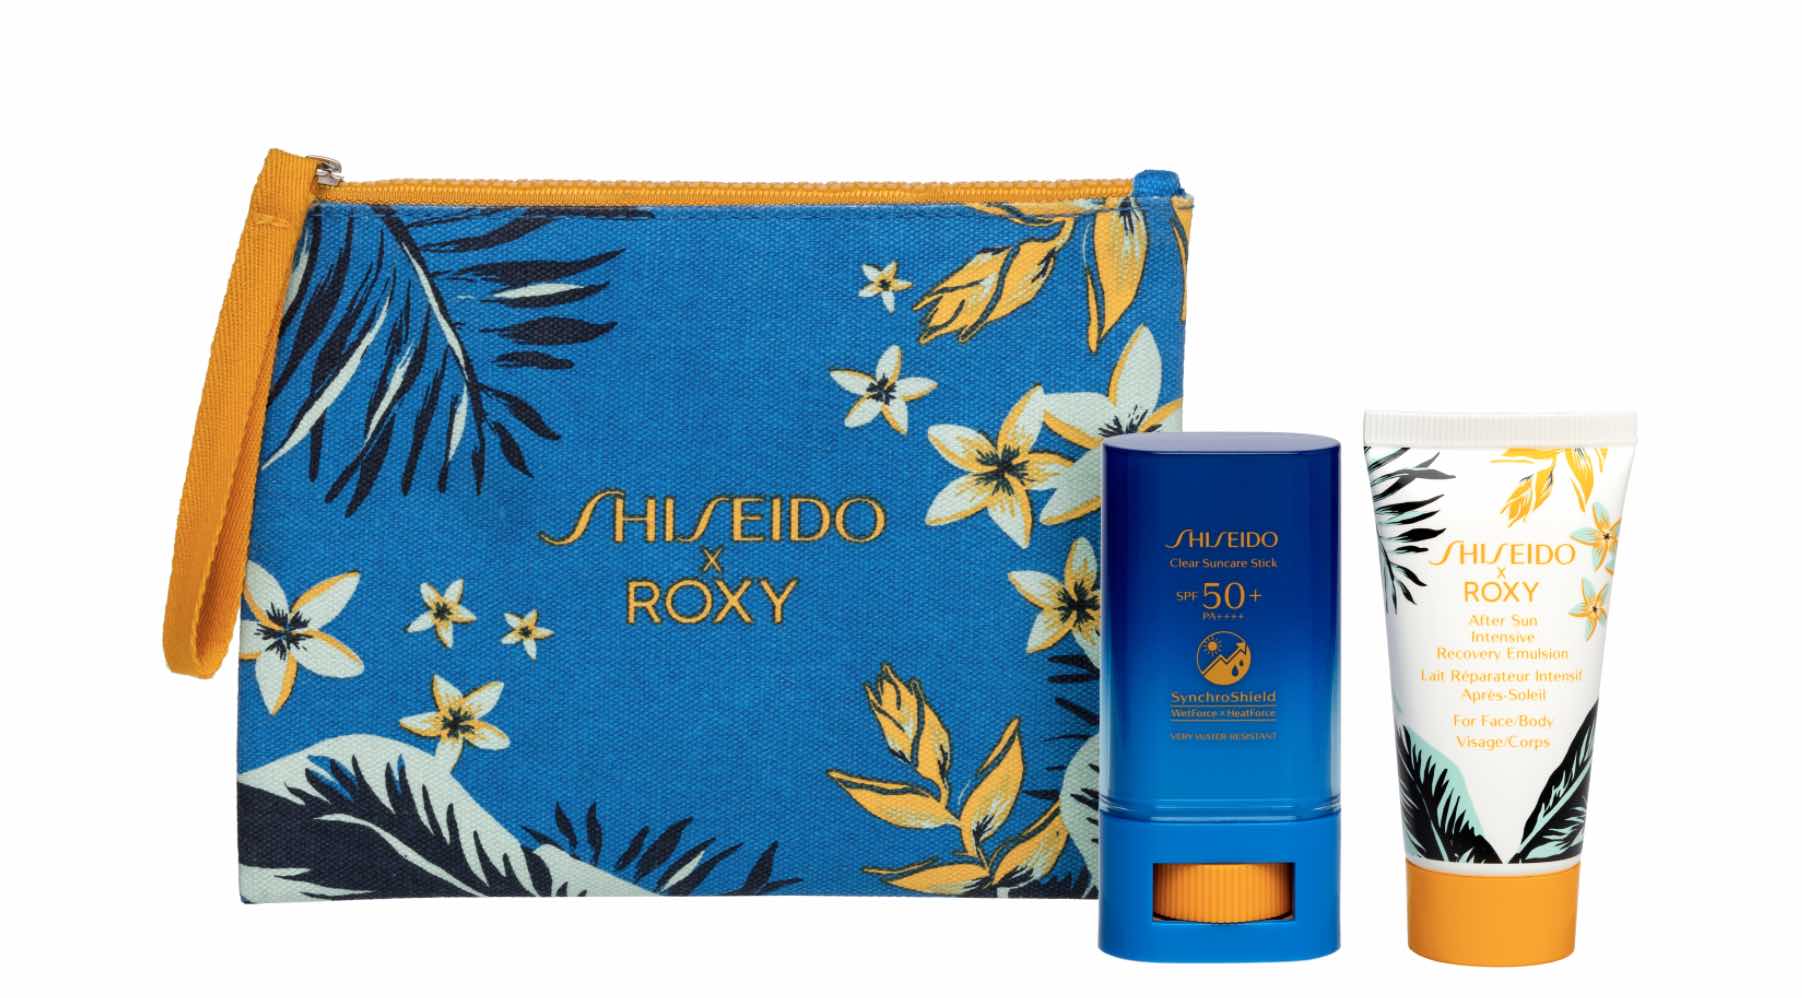 Nuevo objeto de deseo: los kits Shiseido x Roxy